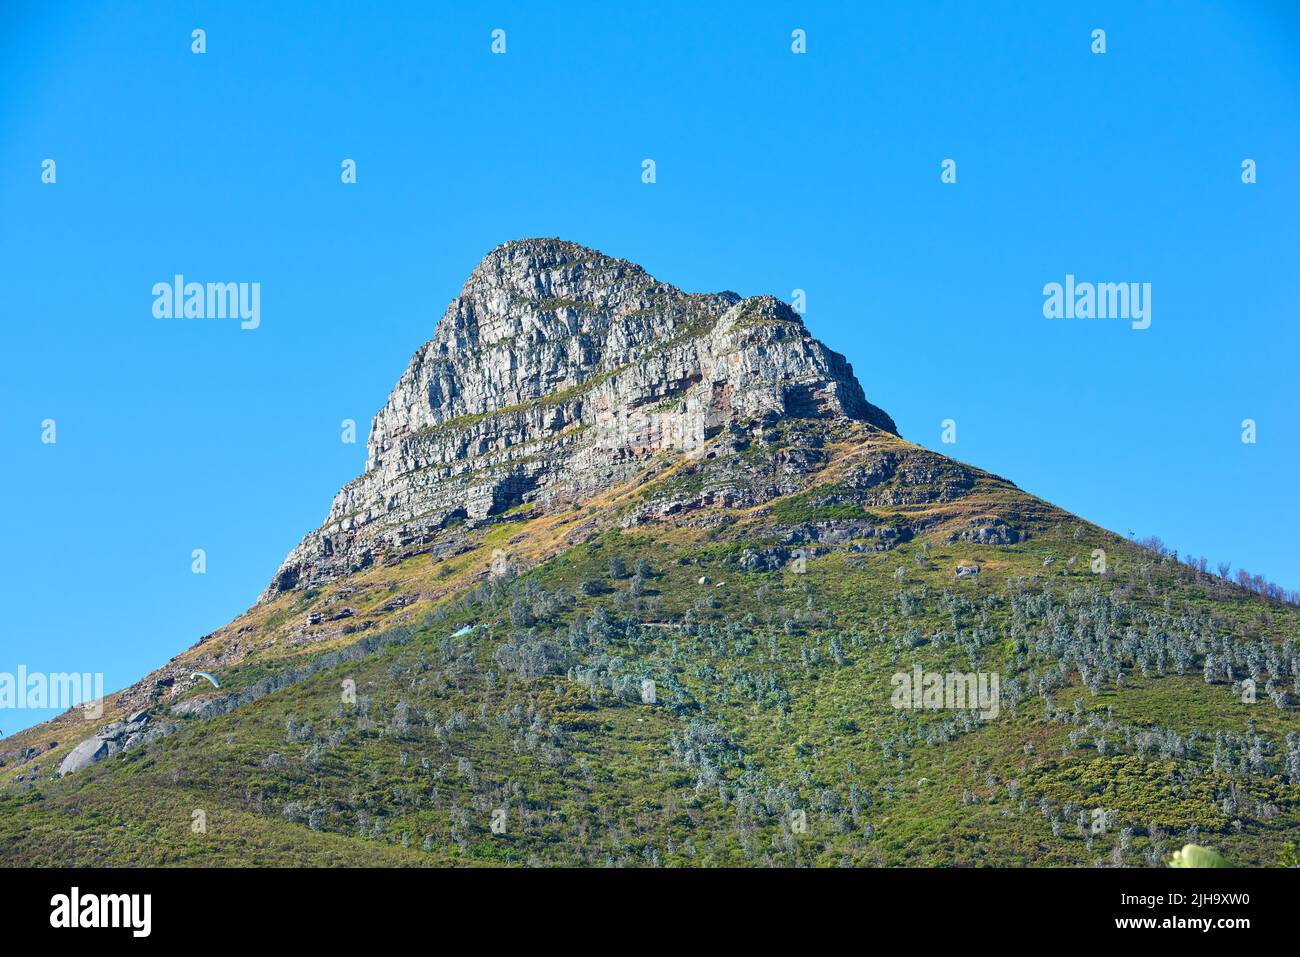 Lions Kopf Berg mit einem blauen Himmel und Kopierraum. Wunderschöne Aussicht auf einen felsigen Berggipfel, der von viel üppiger grüner Vegetation bedeckt ist Stockfoto